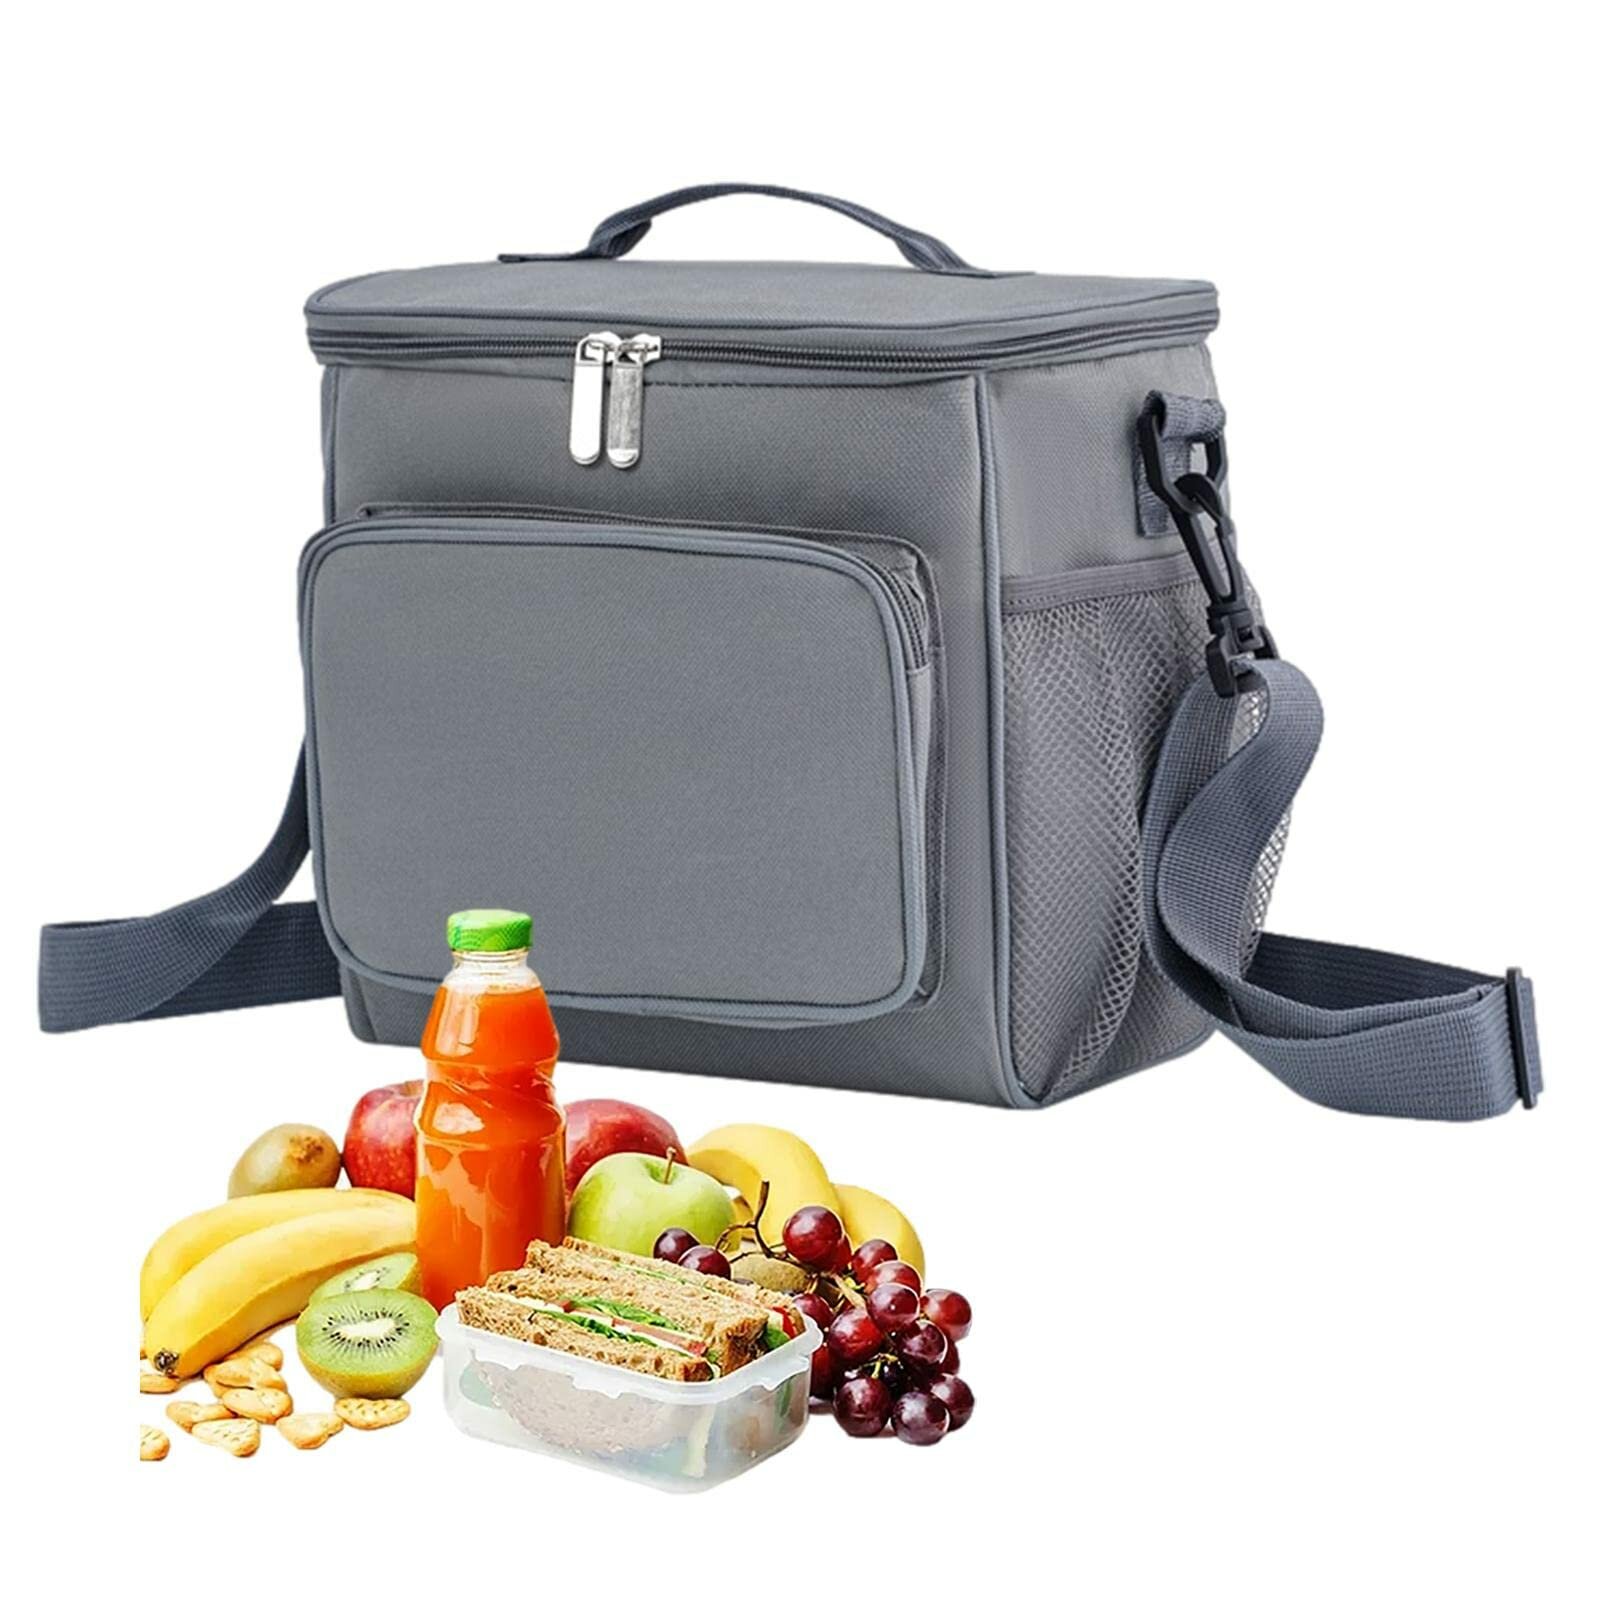 Bolsa grande portátil aislada para el almuerzo, para hombres y mujeres, caja de almuerzo reutilizable para el trabajo, la escuela, el picnic y la playa